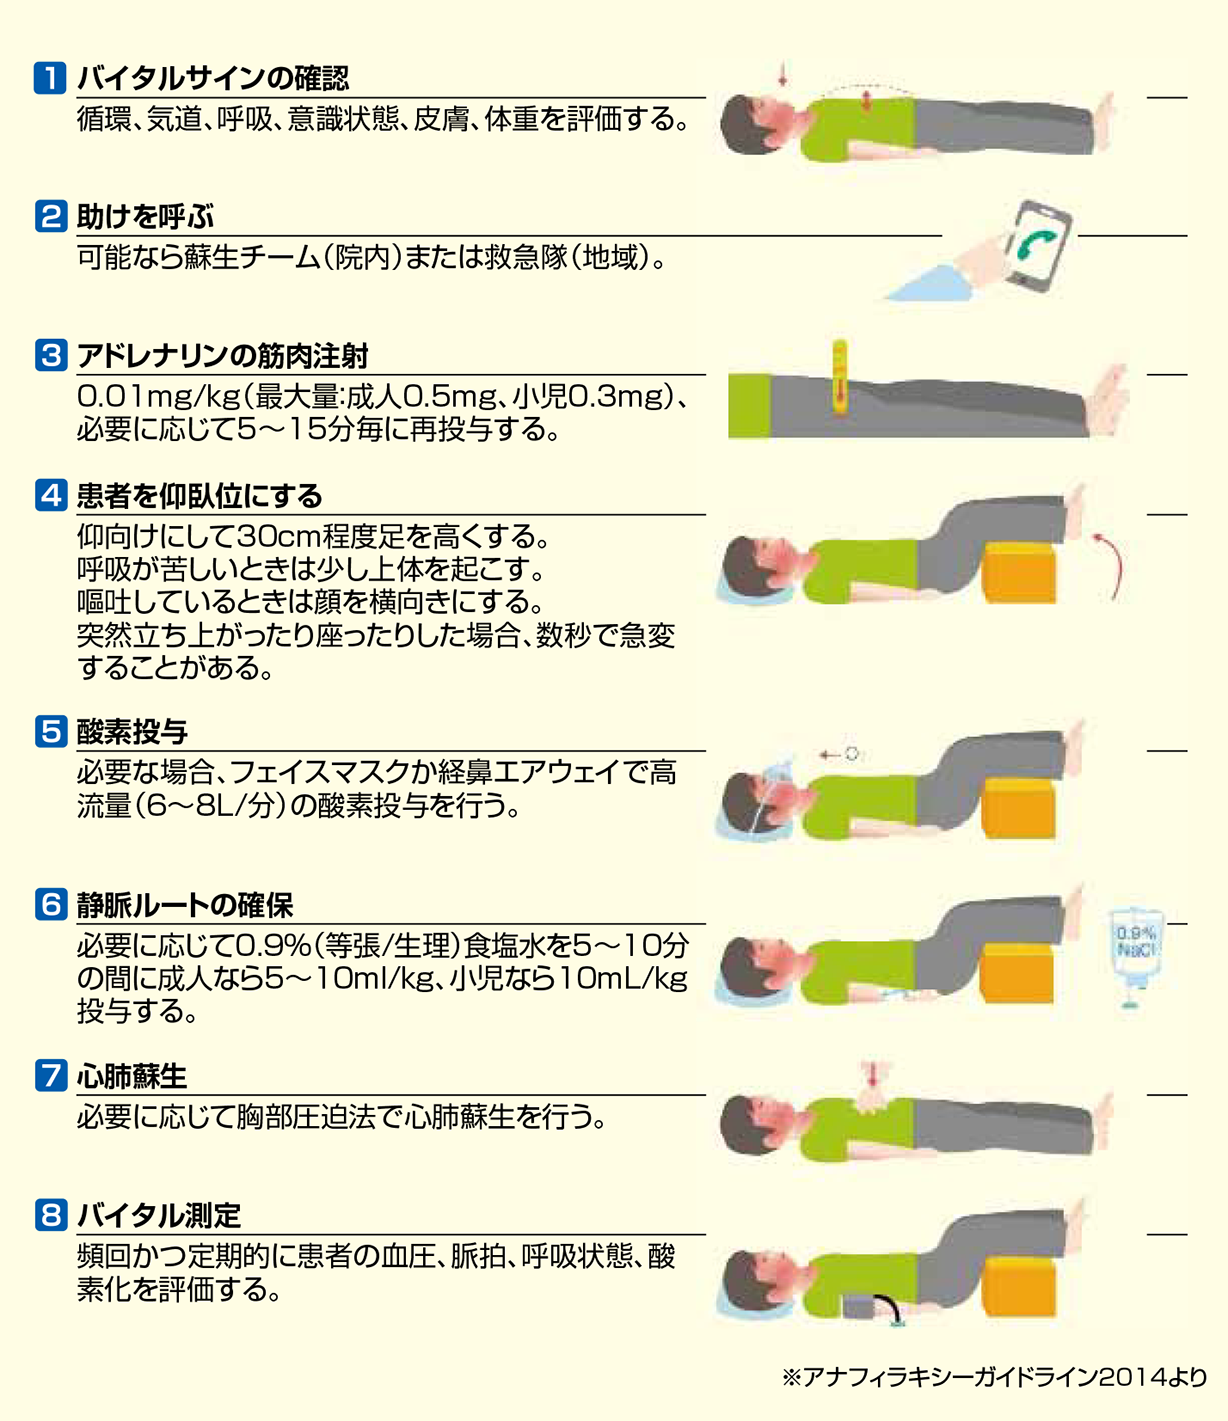 図９ - 1 　初期対応の手順4）